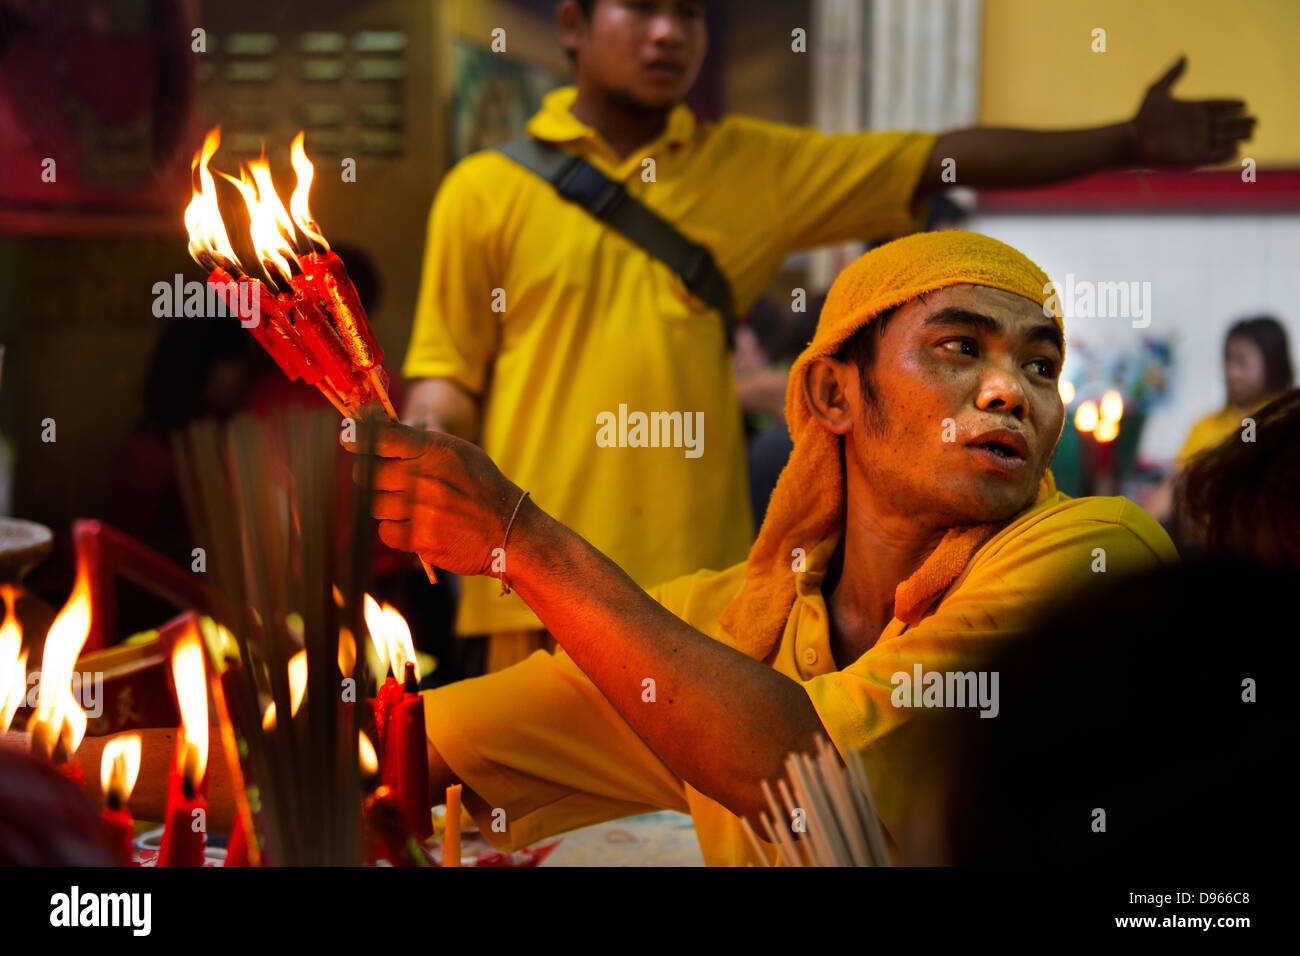 Les célébrations du Nouvel An chinois dans China Town, Bangkok Banque D'Images